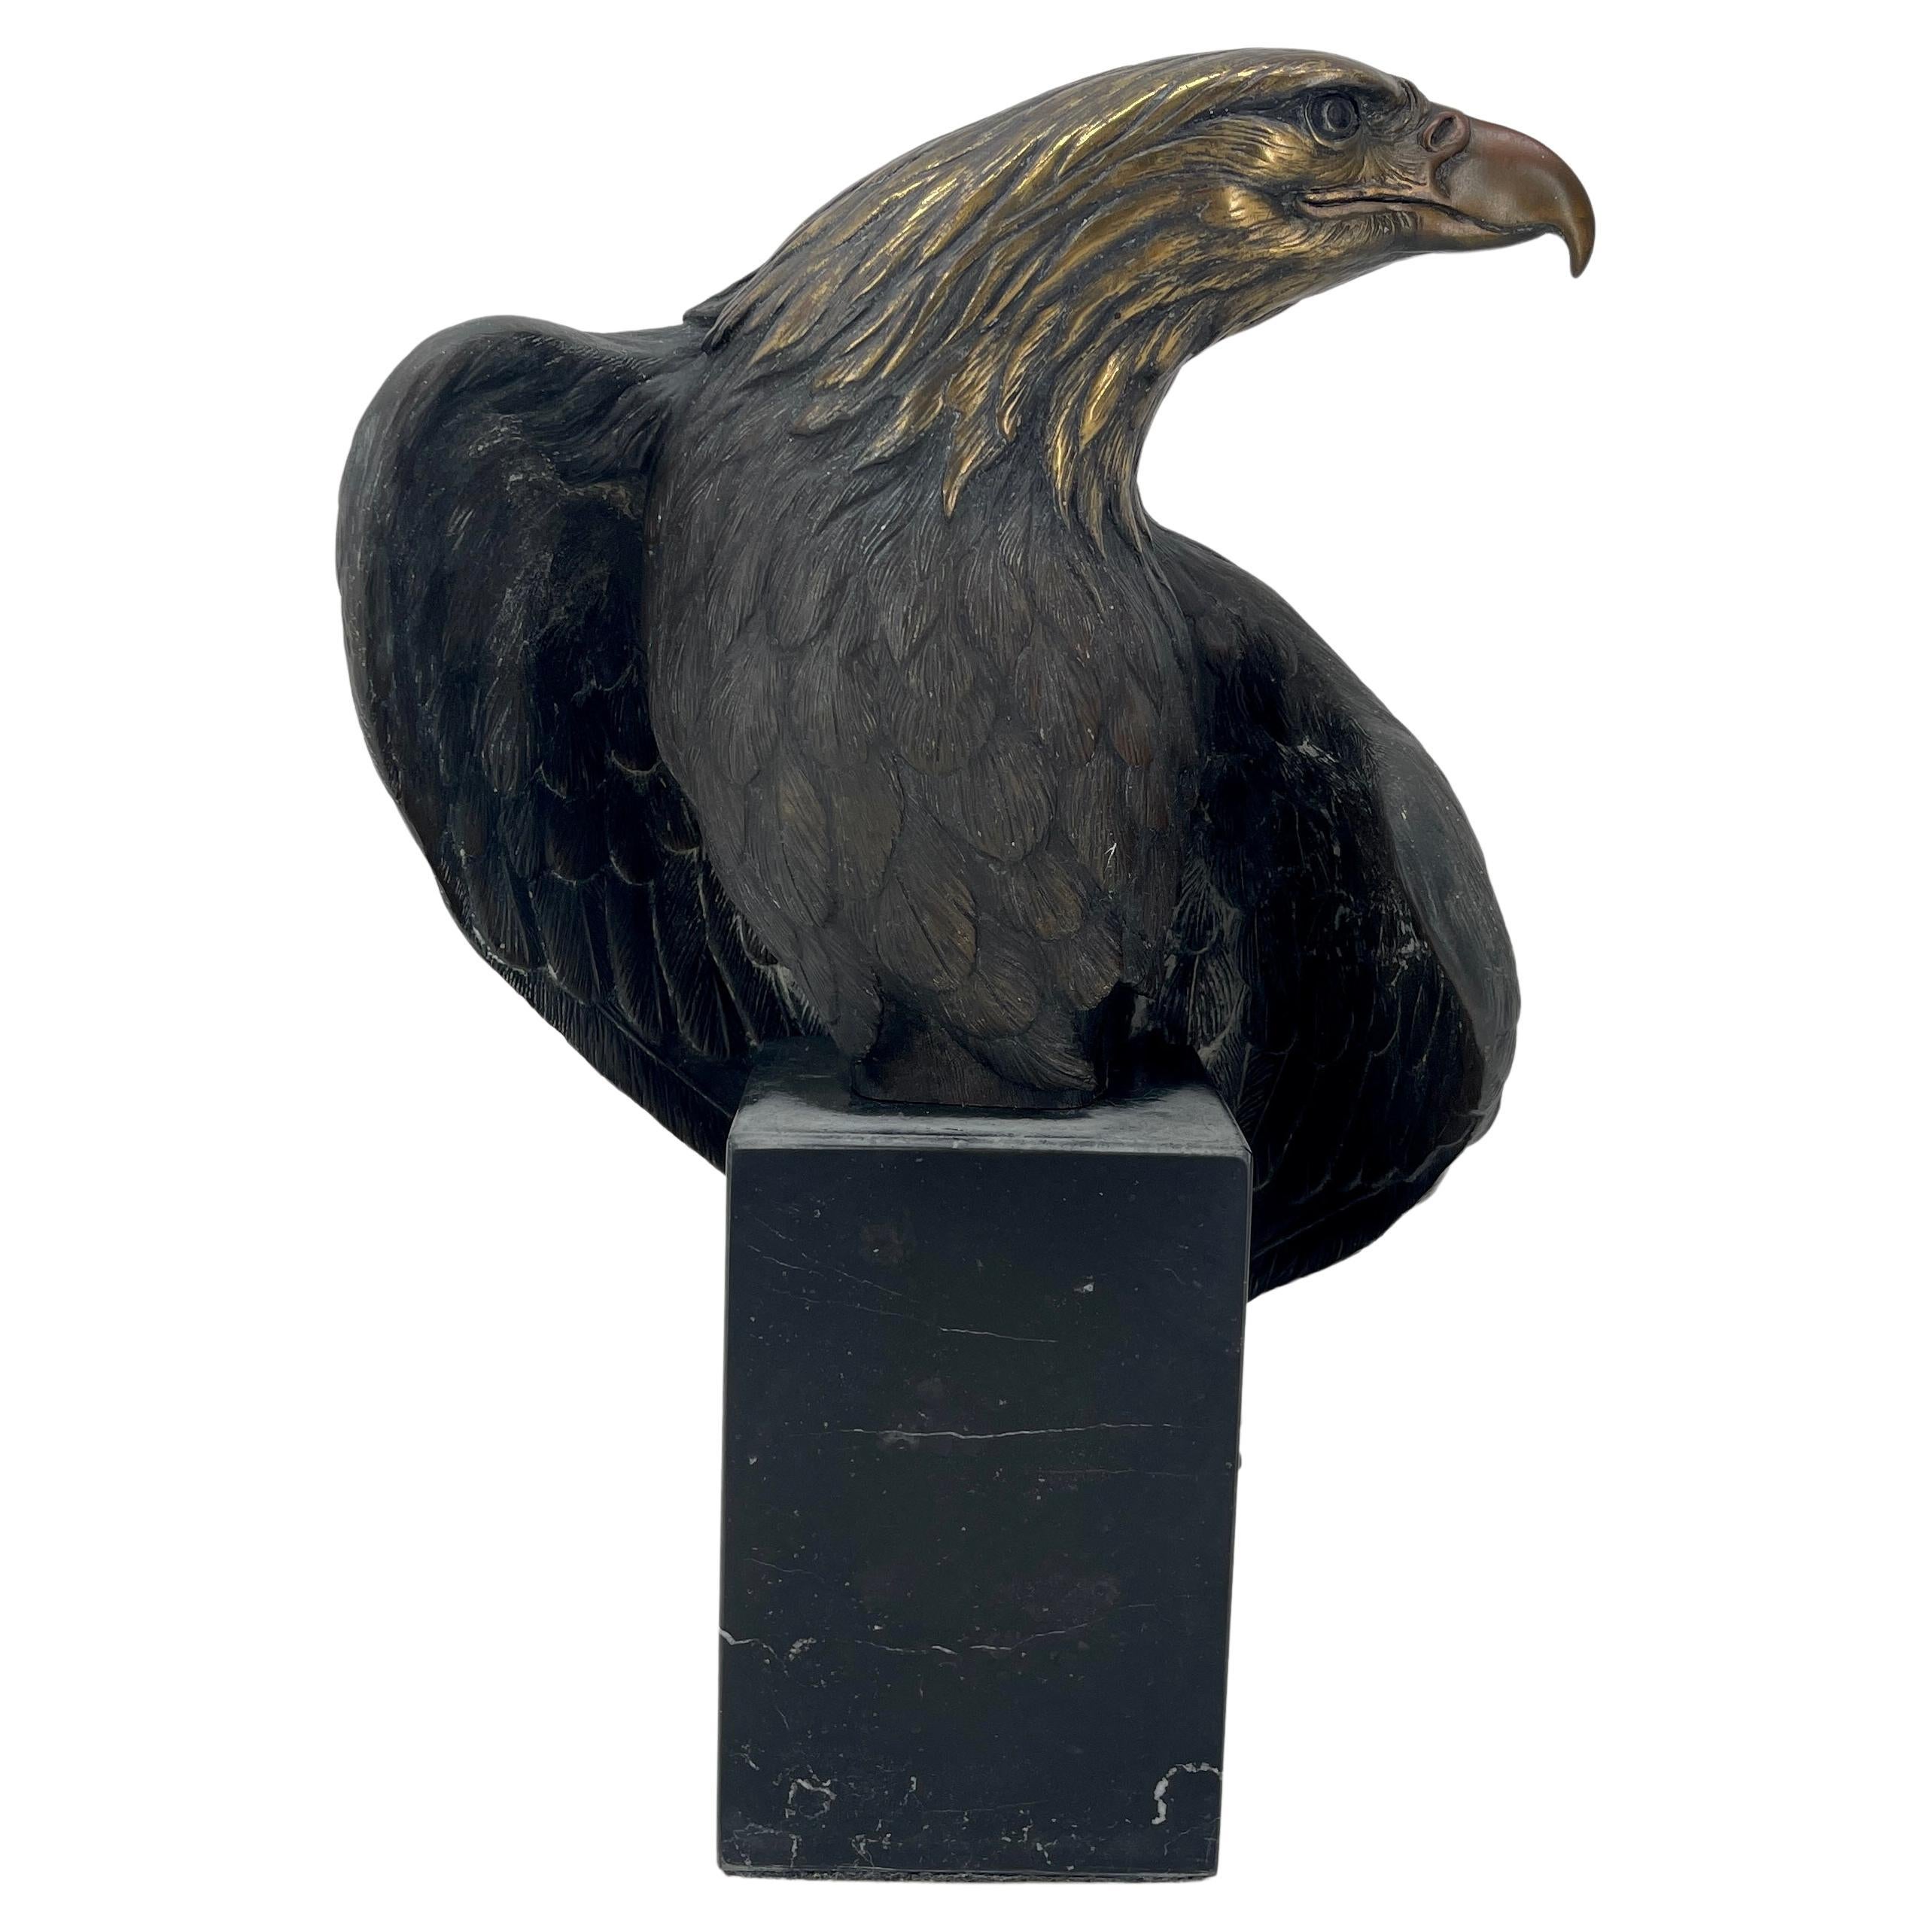 Grand aigle français sur un socle en marbre noir belge, vers 1880-1900.
Cette étonnante sculpture d'aigle est réalisée dans un bronze massif qui a conservé sa patine d'origine. La tête et les épaules de l'aigle présentent une usure imbattable due